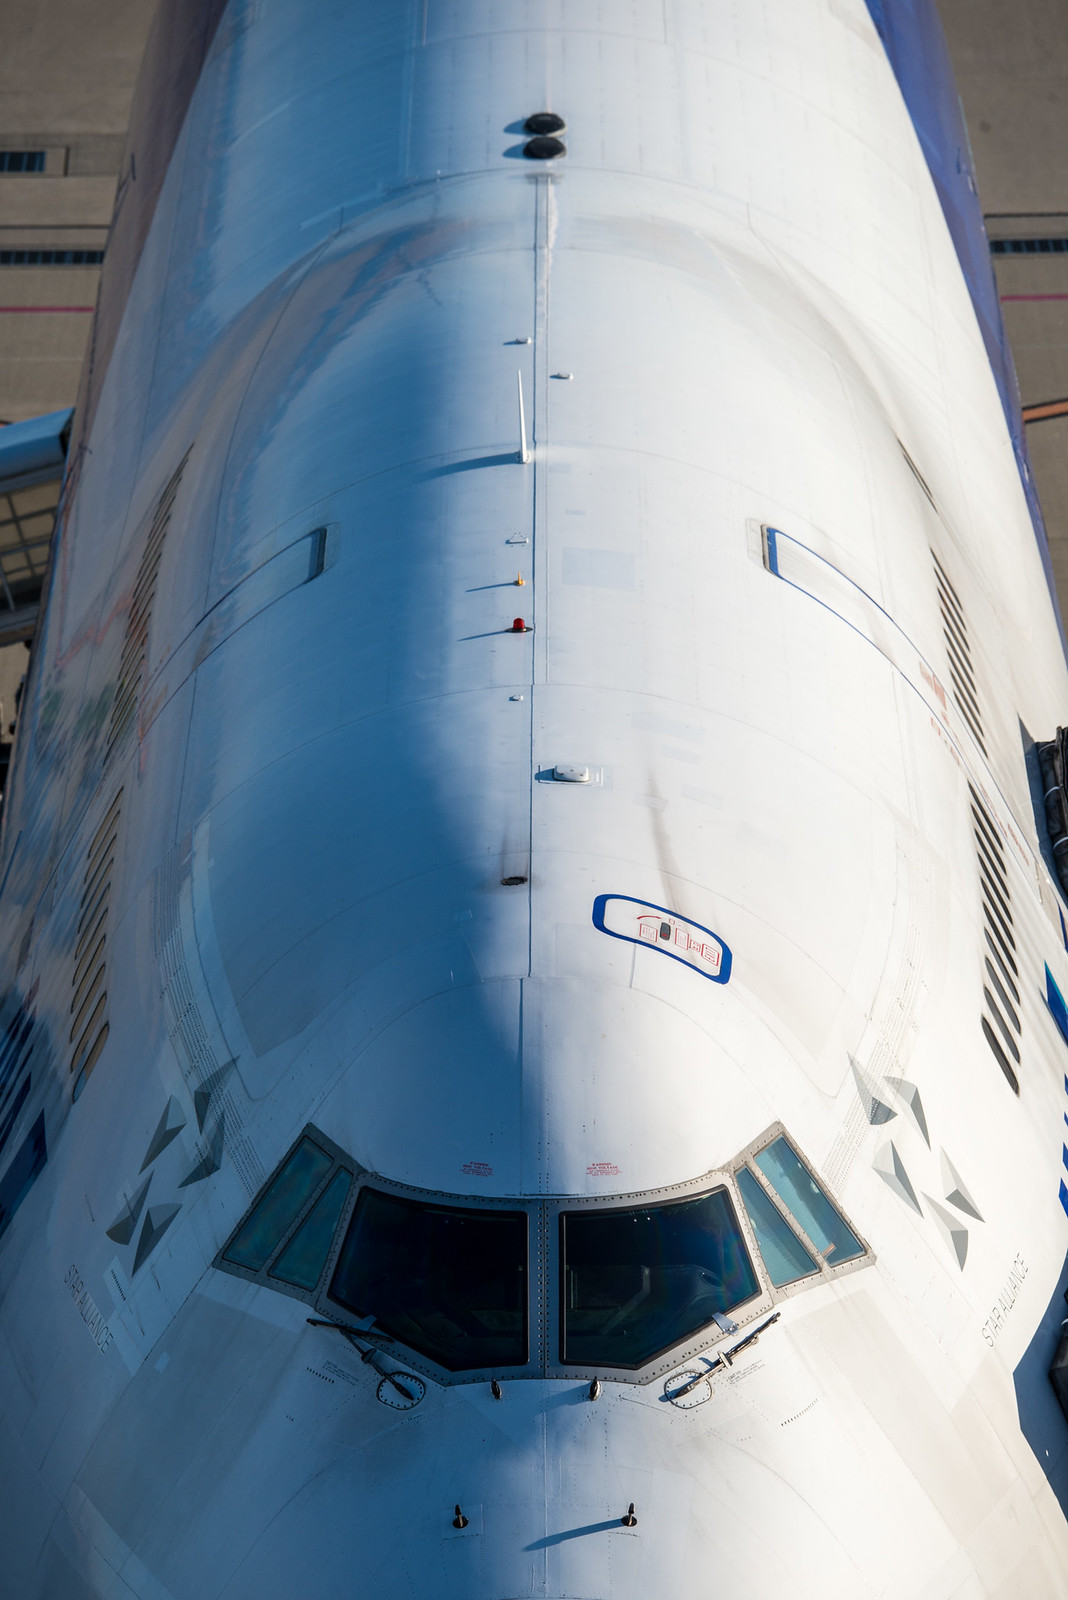 ANA 747-400D JA8961